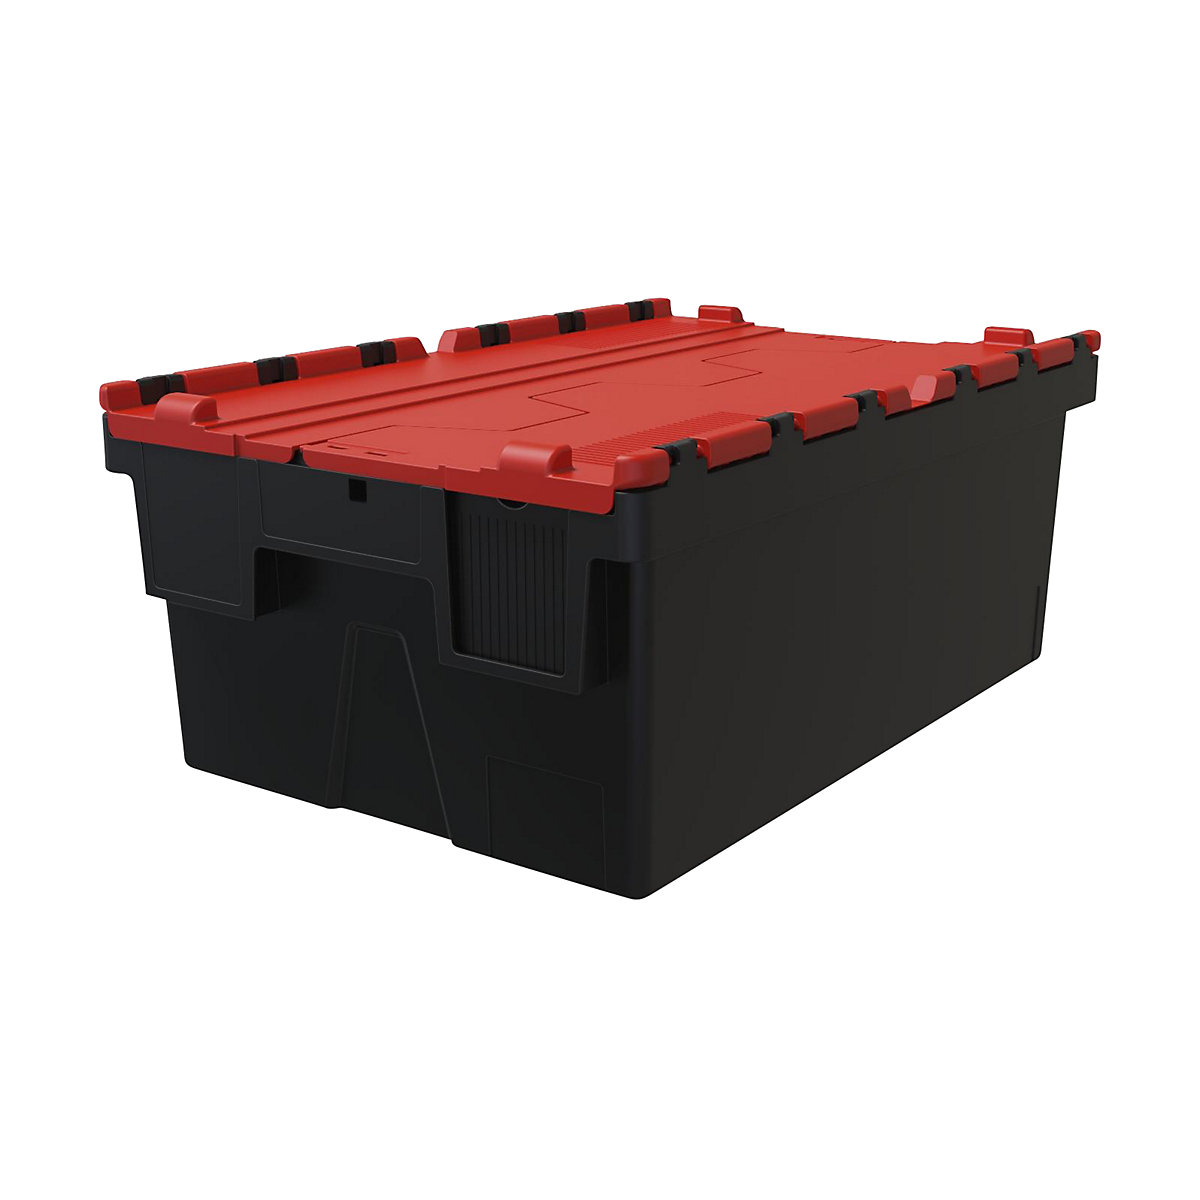 Többször használható rakásolható tároló, h x szé x ma 600 x 400 x 250 mm, cs. e. 5 db, fekete színben, piros fedéllel